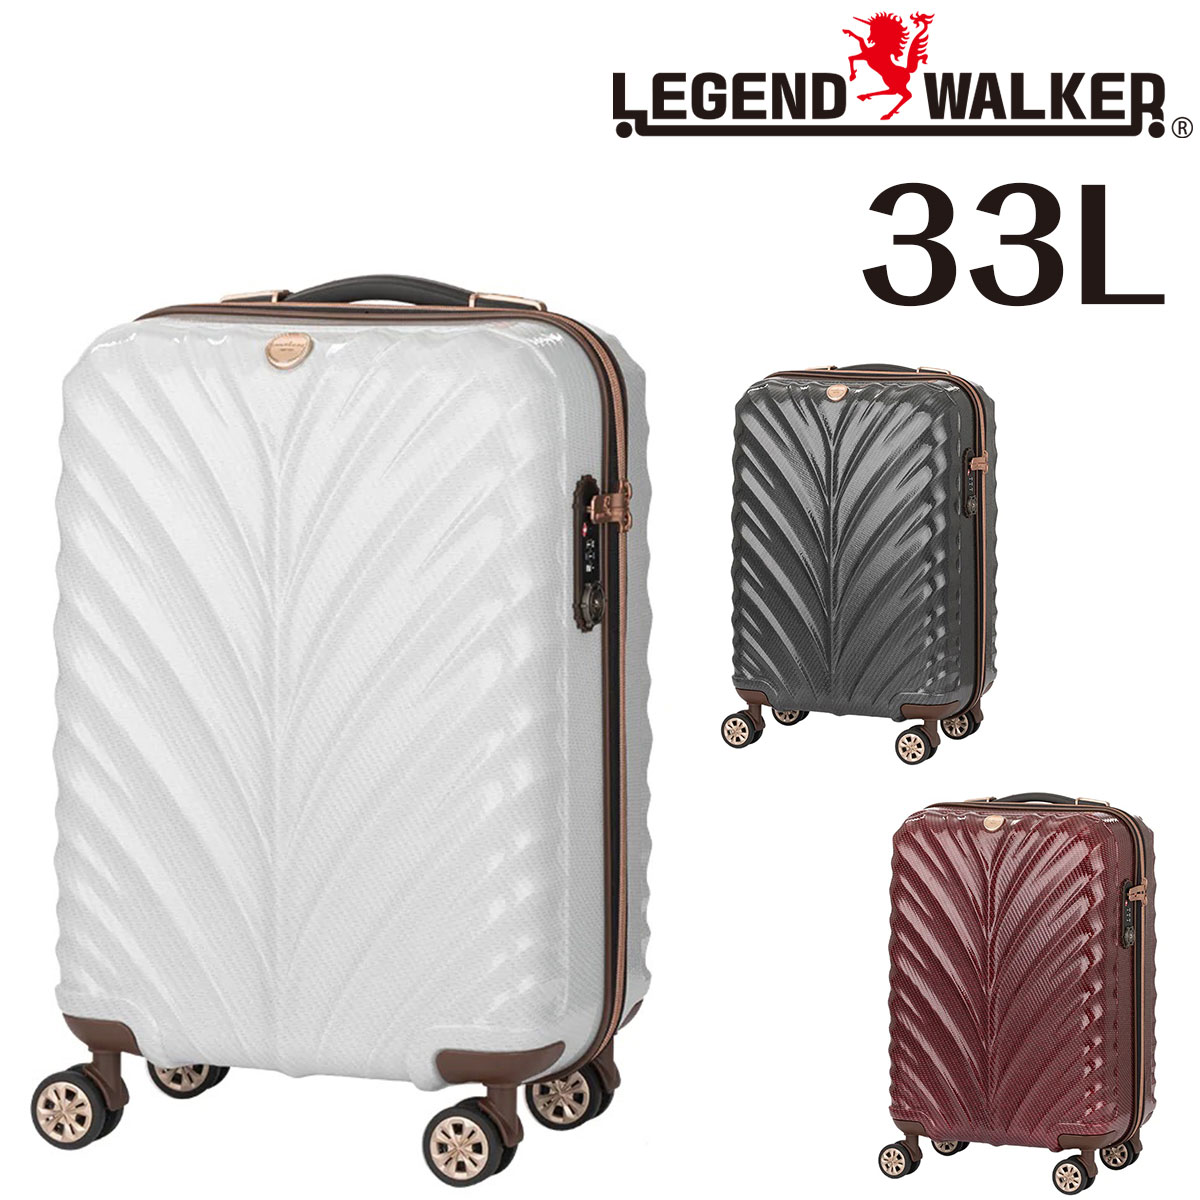 【メーカー直送】 レジェンドウォーカー LEGEND WALKER リース WREATH スーツケース キャリー ハード 小型 33L 1〜2泊程度 Sサイズ ファ